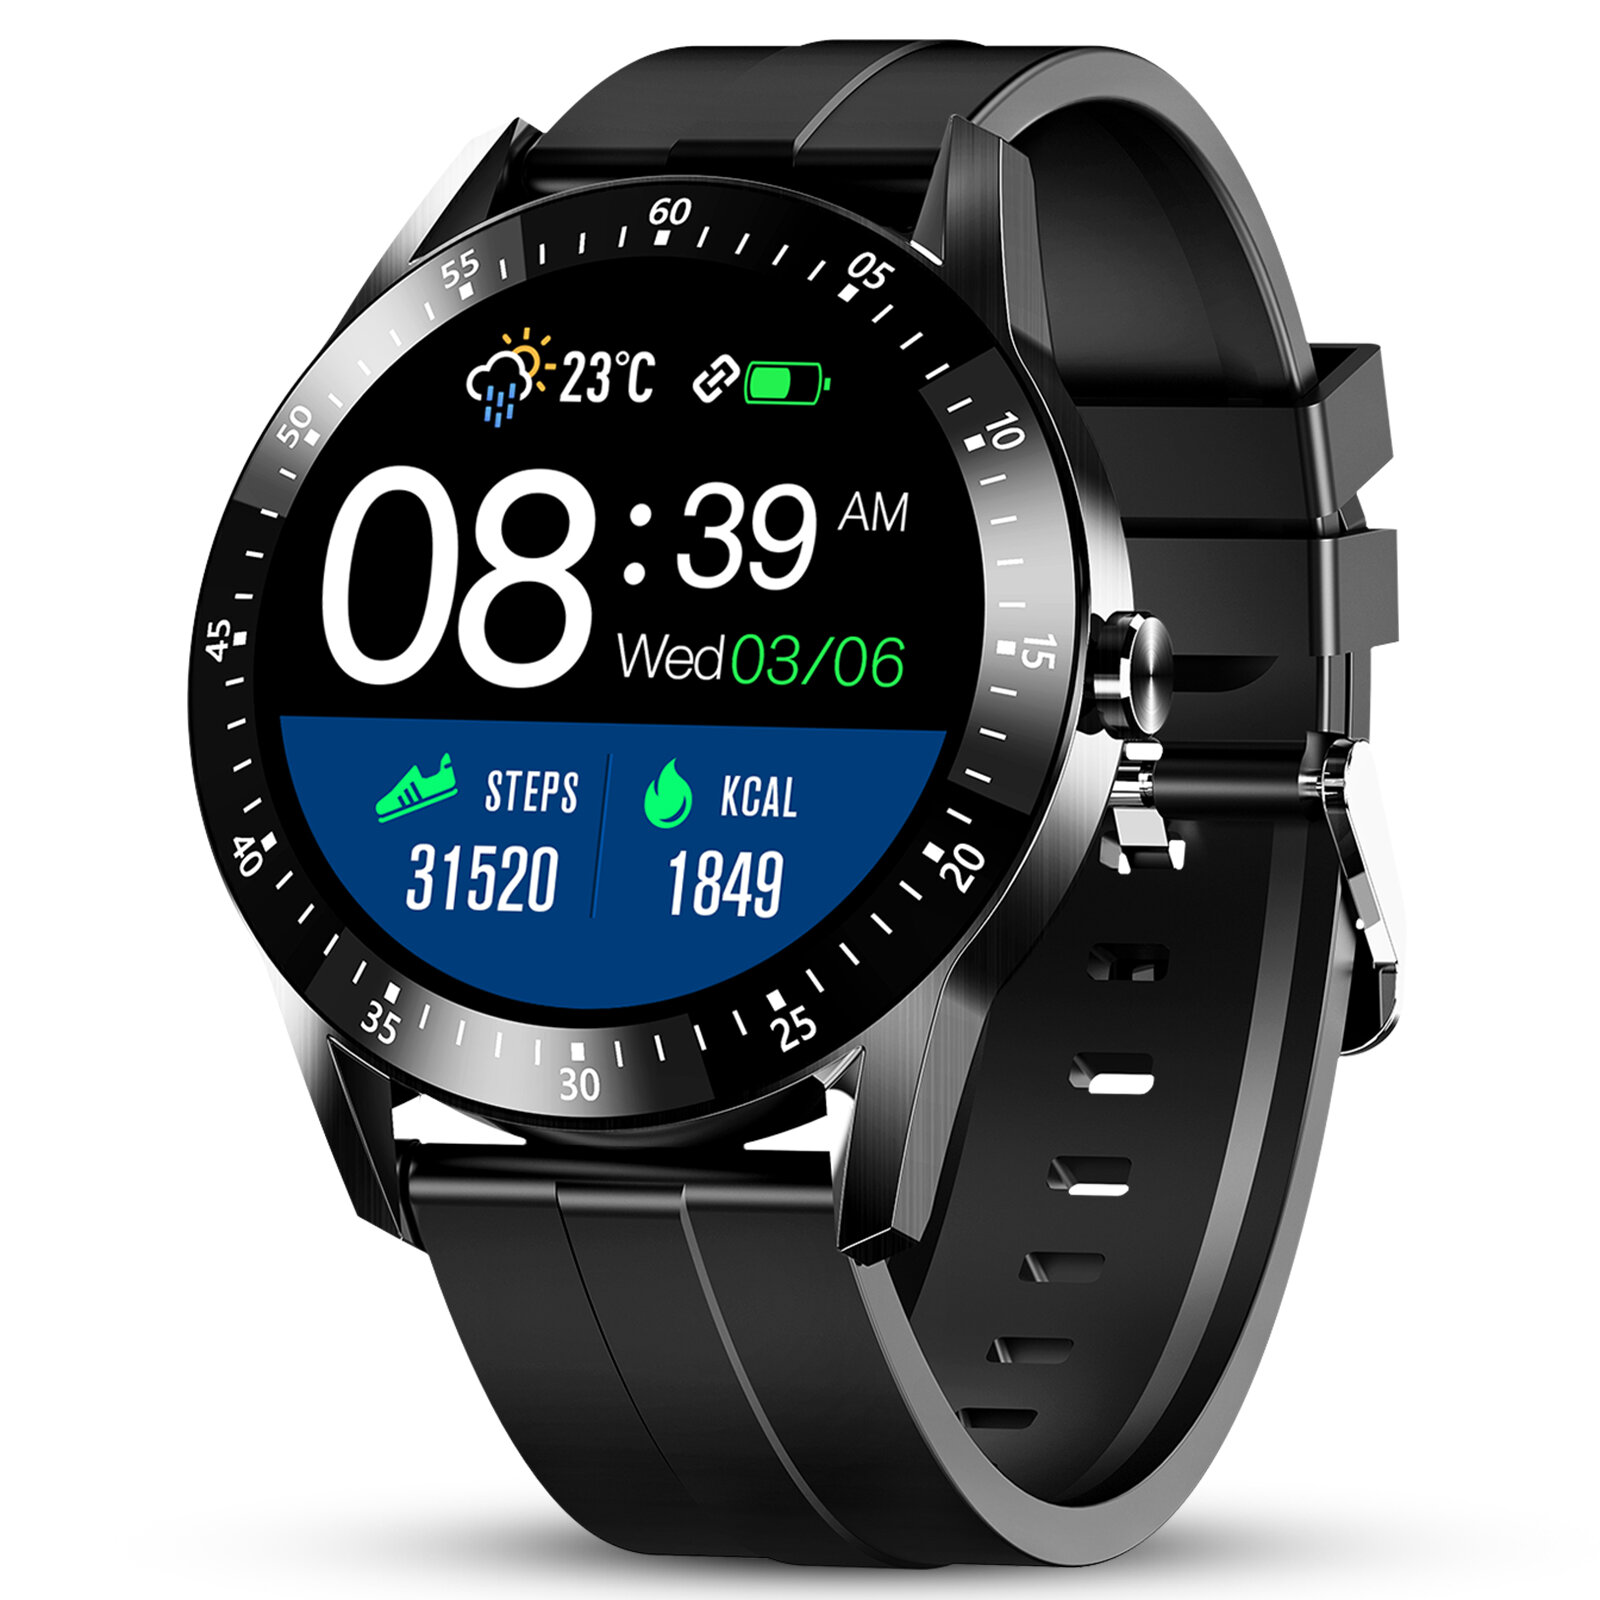 Στα 18,93€  από αποθήκη Πολωνίας | GOKOO S11 1.28 inch Full Touch Screen Heart Rate Blood Pressure Monitor 24 Sports Modes 300mAh Large Battery Capacity IP67 Waterproof Smart Watch